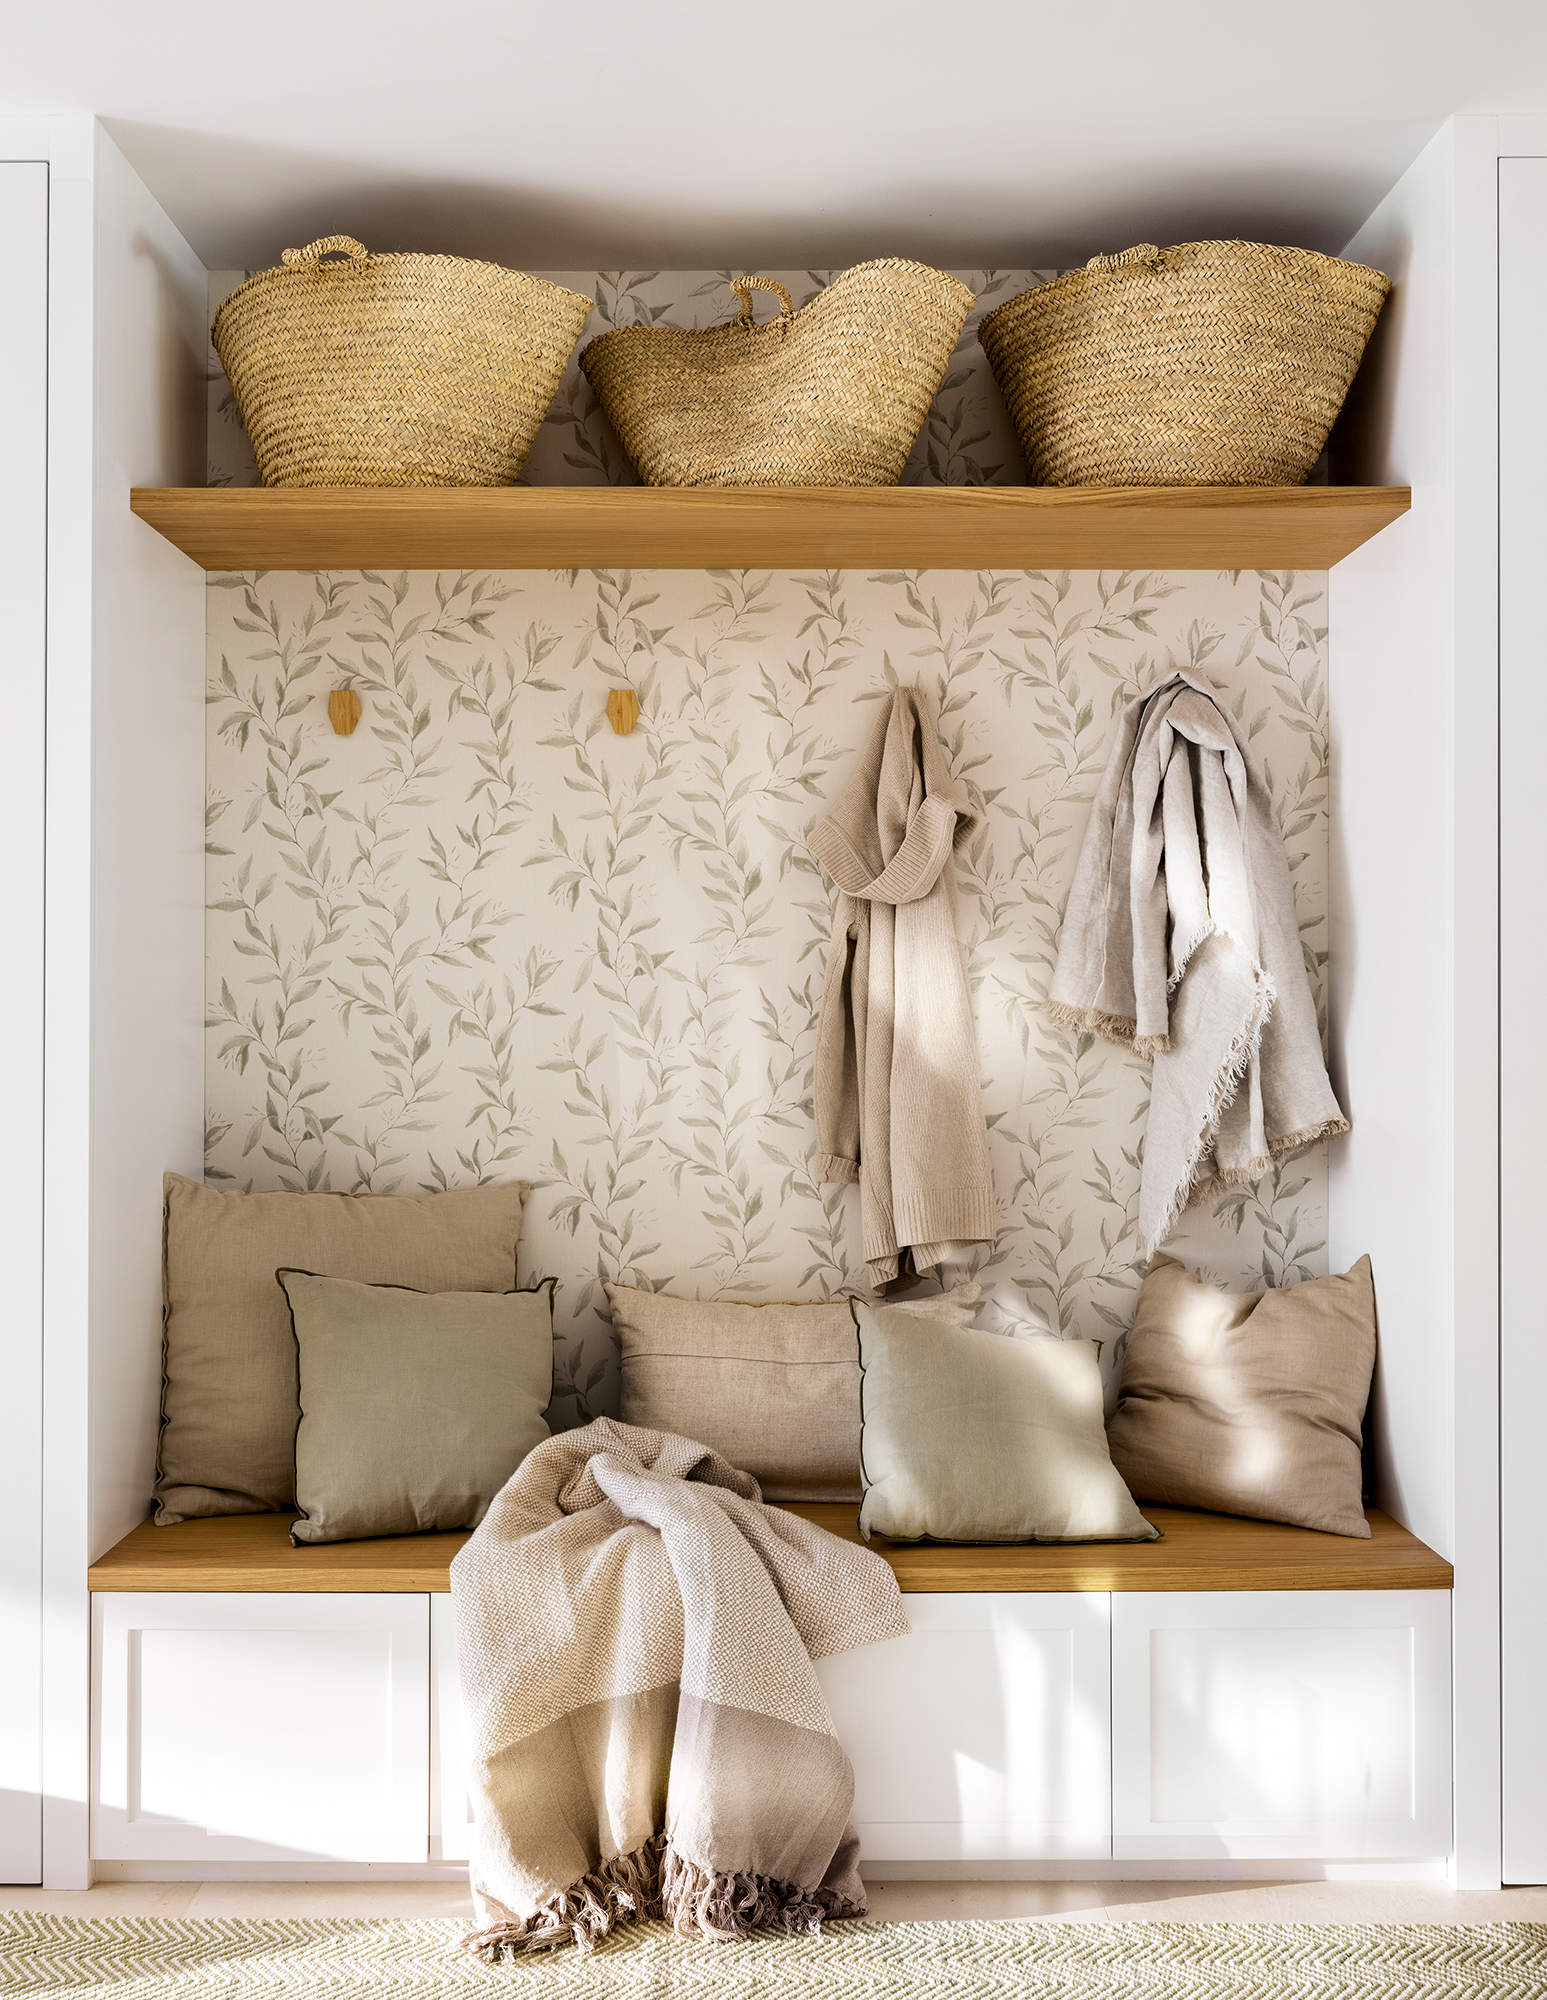 Mueble a medida con percheros para y cestas en un estante. 